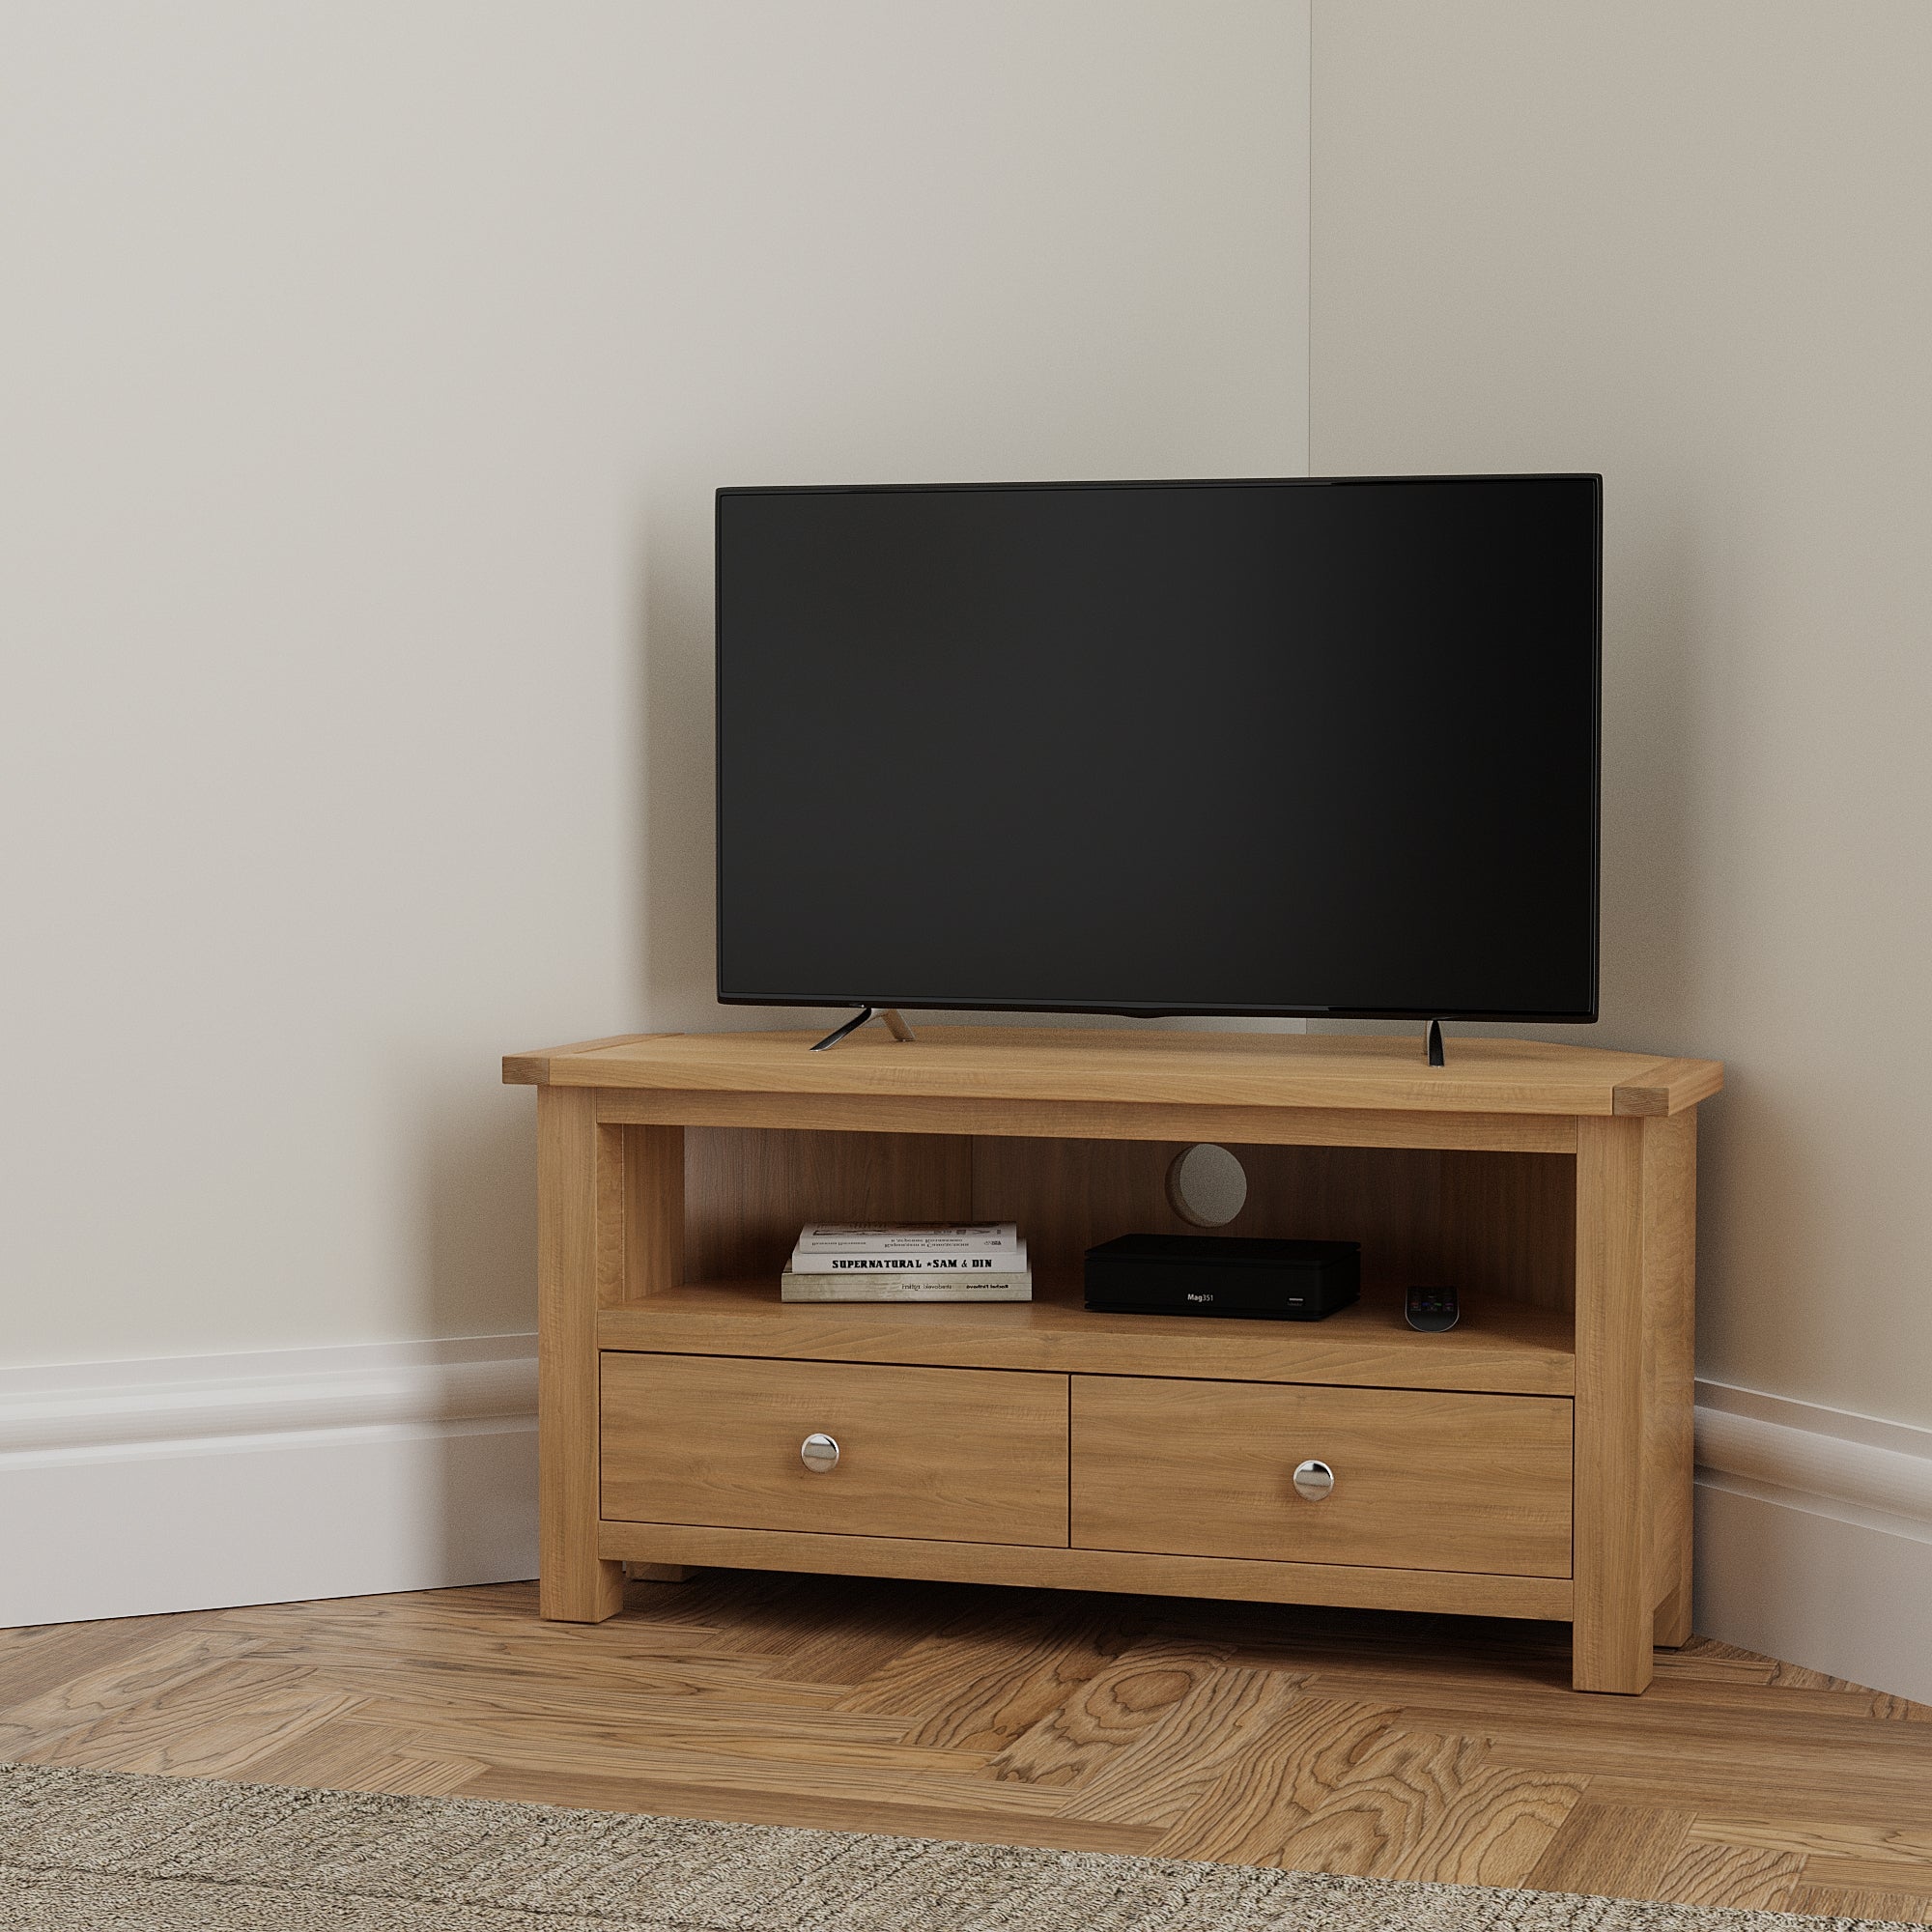 oak tv stand